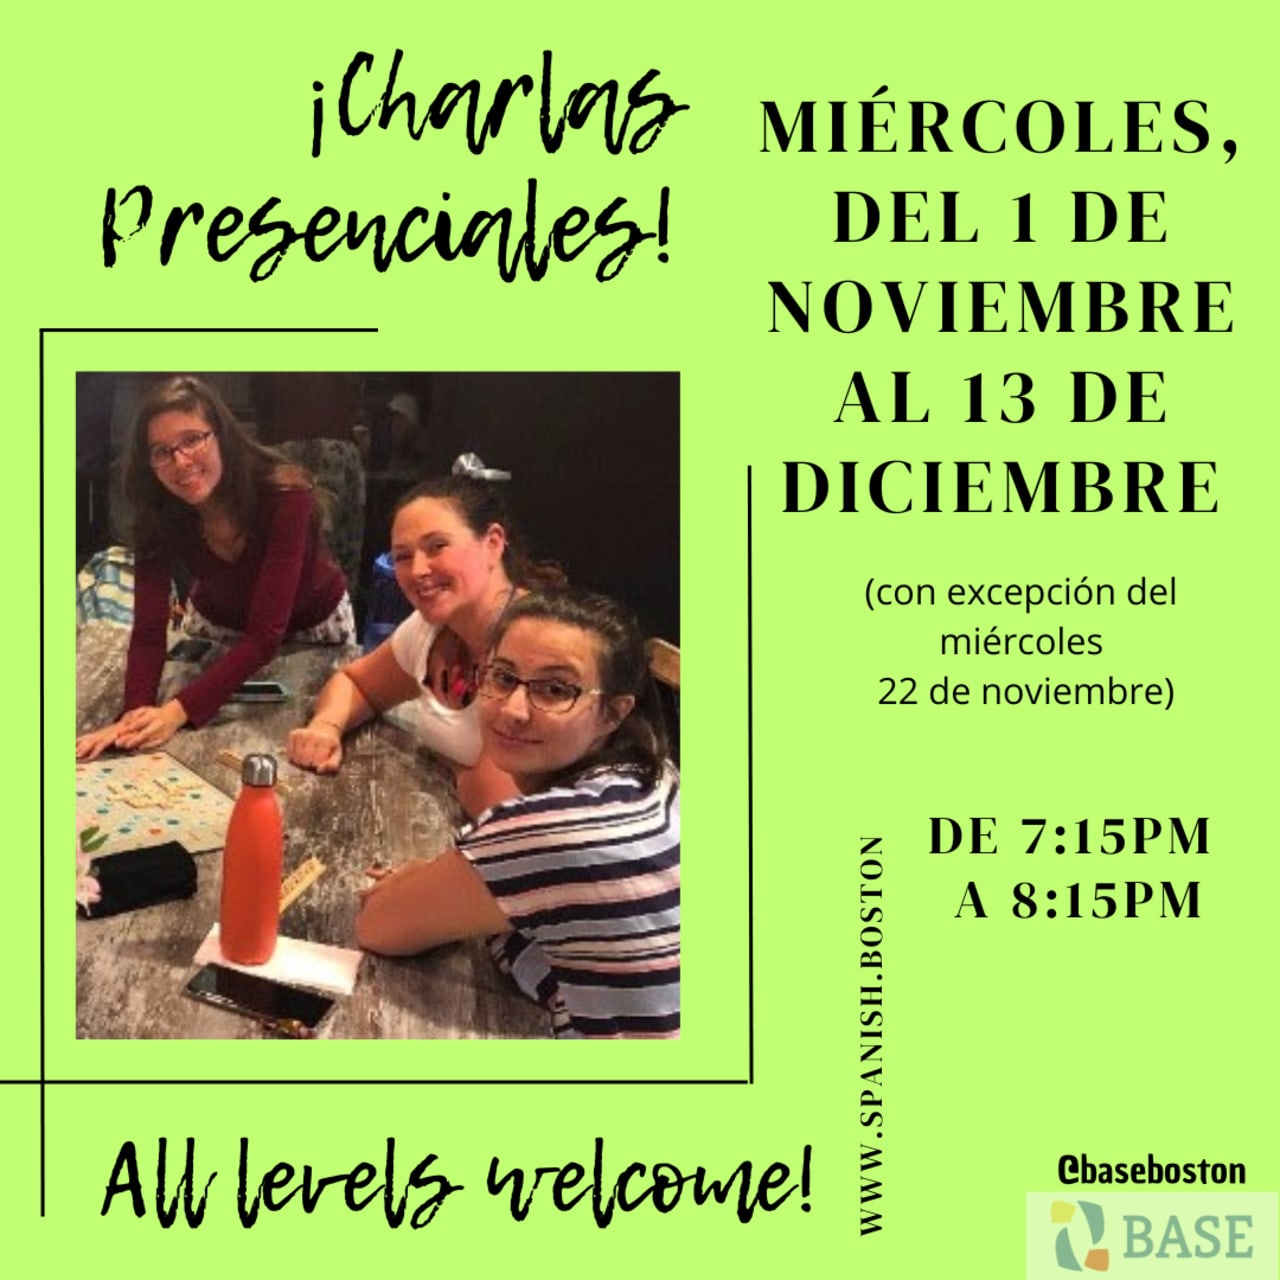 Charlas Presenciales!: free informal Spanish conversation